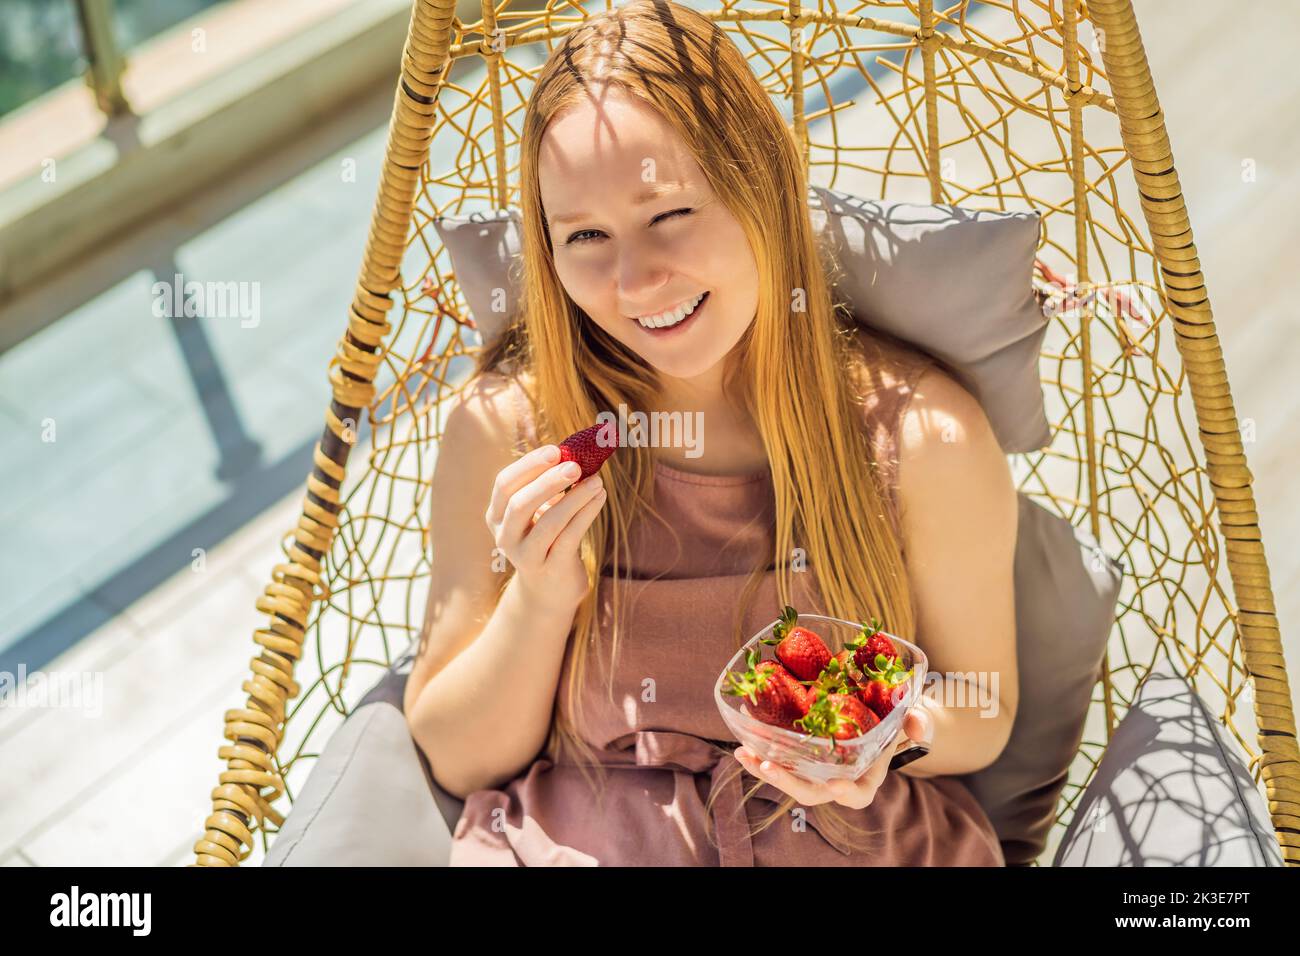 Portrait einer wunderschönen Frau in einem wunderschönen Kleid, die auf einer Terrasse sitzt und Erdbeere isst Stockfoto